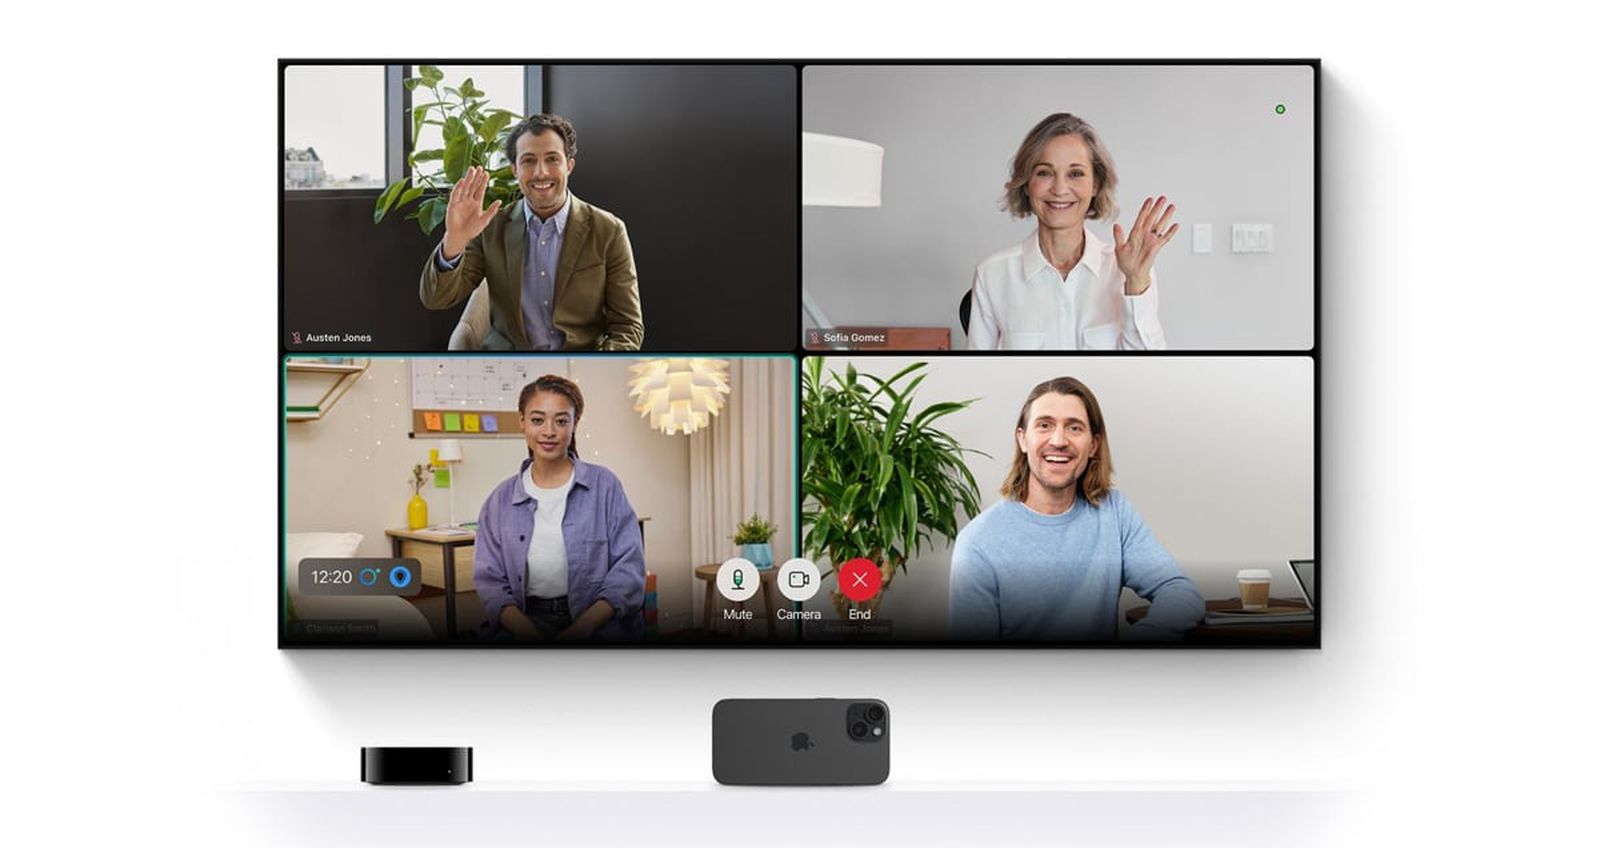 Το Webex είναι πλέον διαθέσιμο στο Apple TV 4K για βιντεοκλήσεις